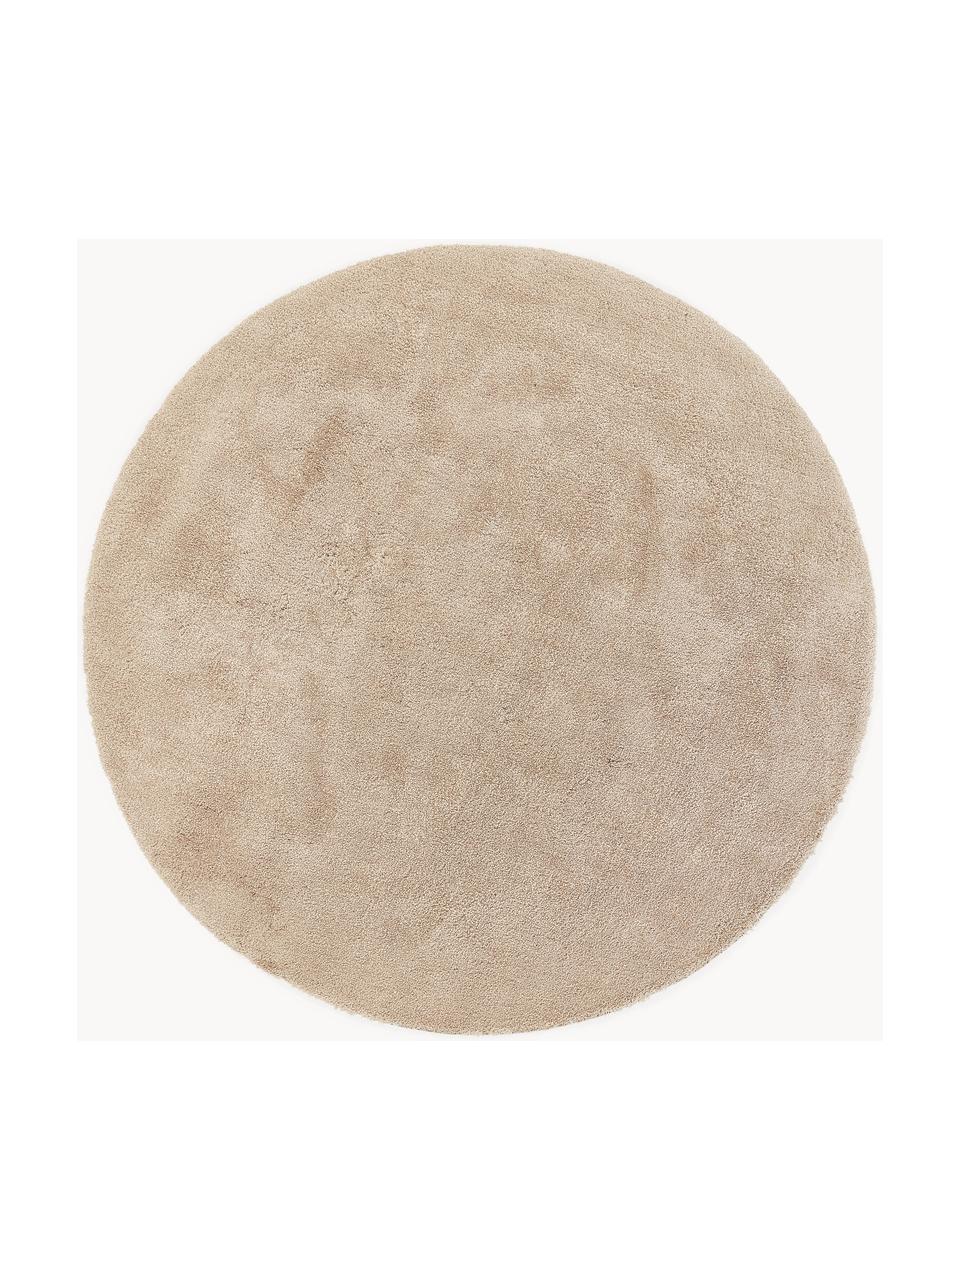 Načechraný kulatý koberec s vysokým vlasem Leighton, Béžová, Ø 200 cm (velikost L)